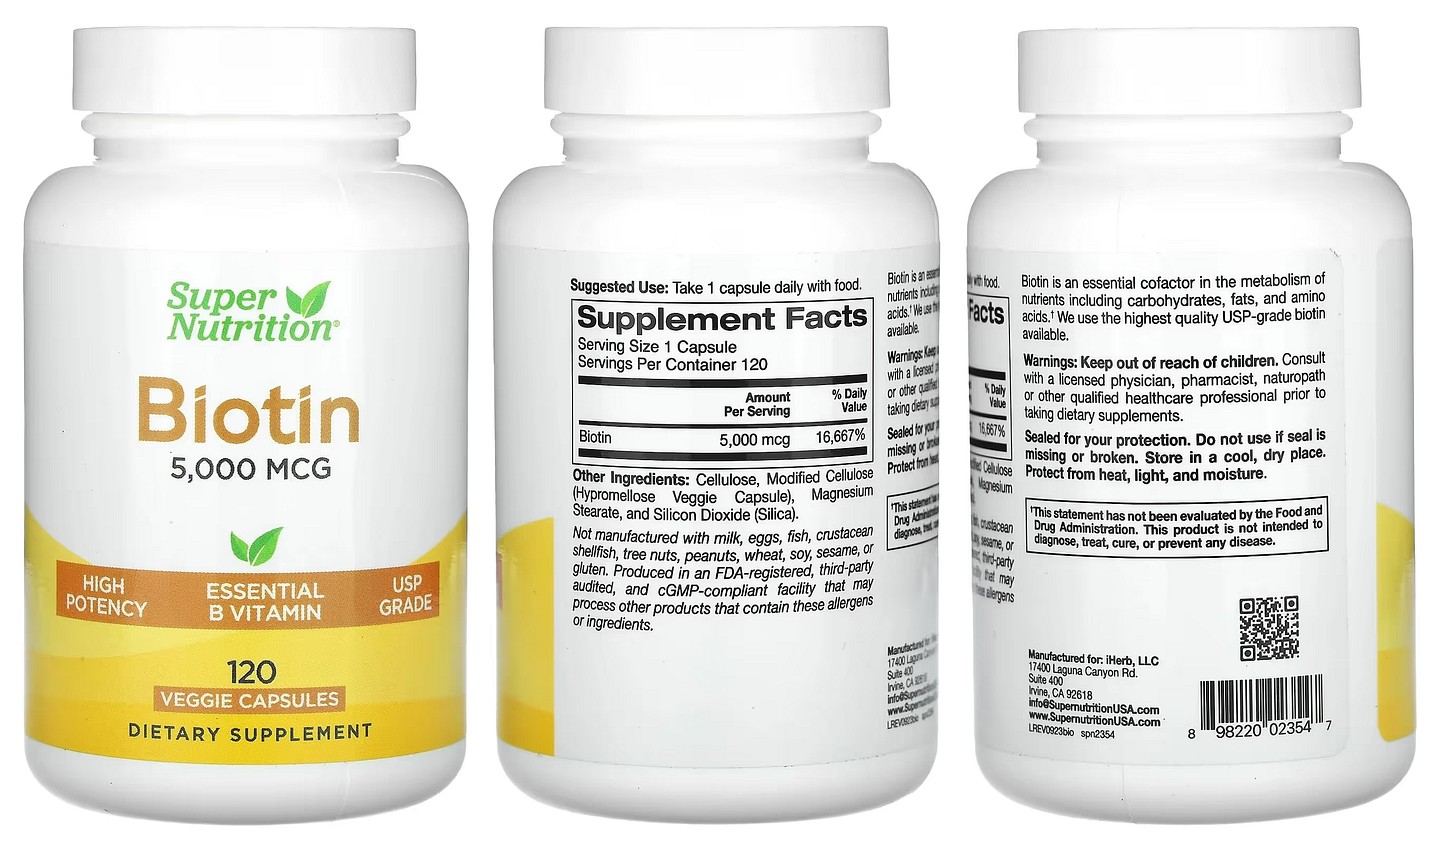 Super Nutrition, Biotin packaging